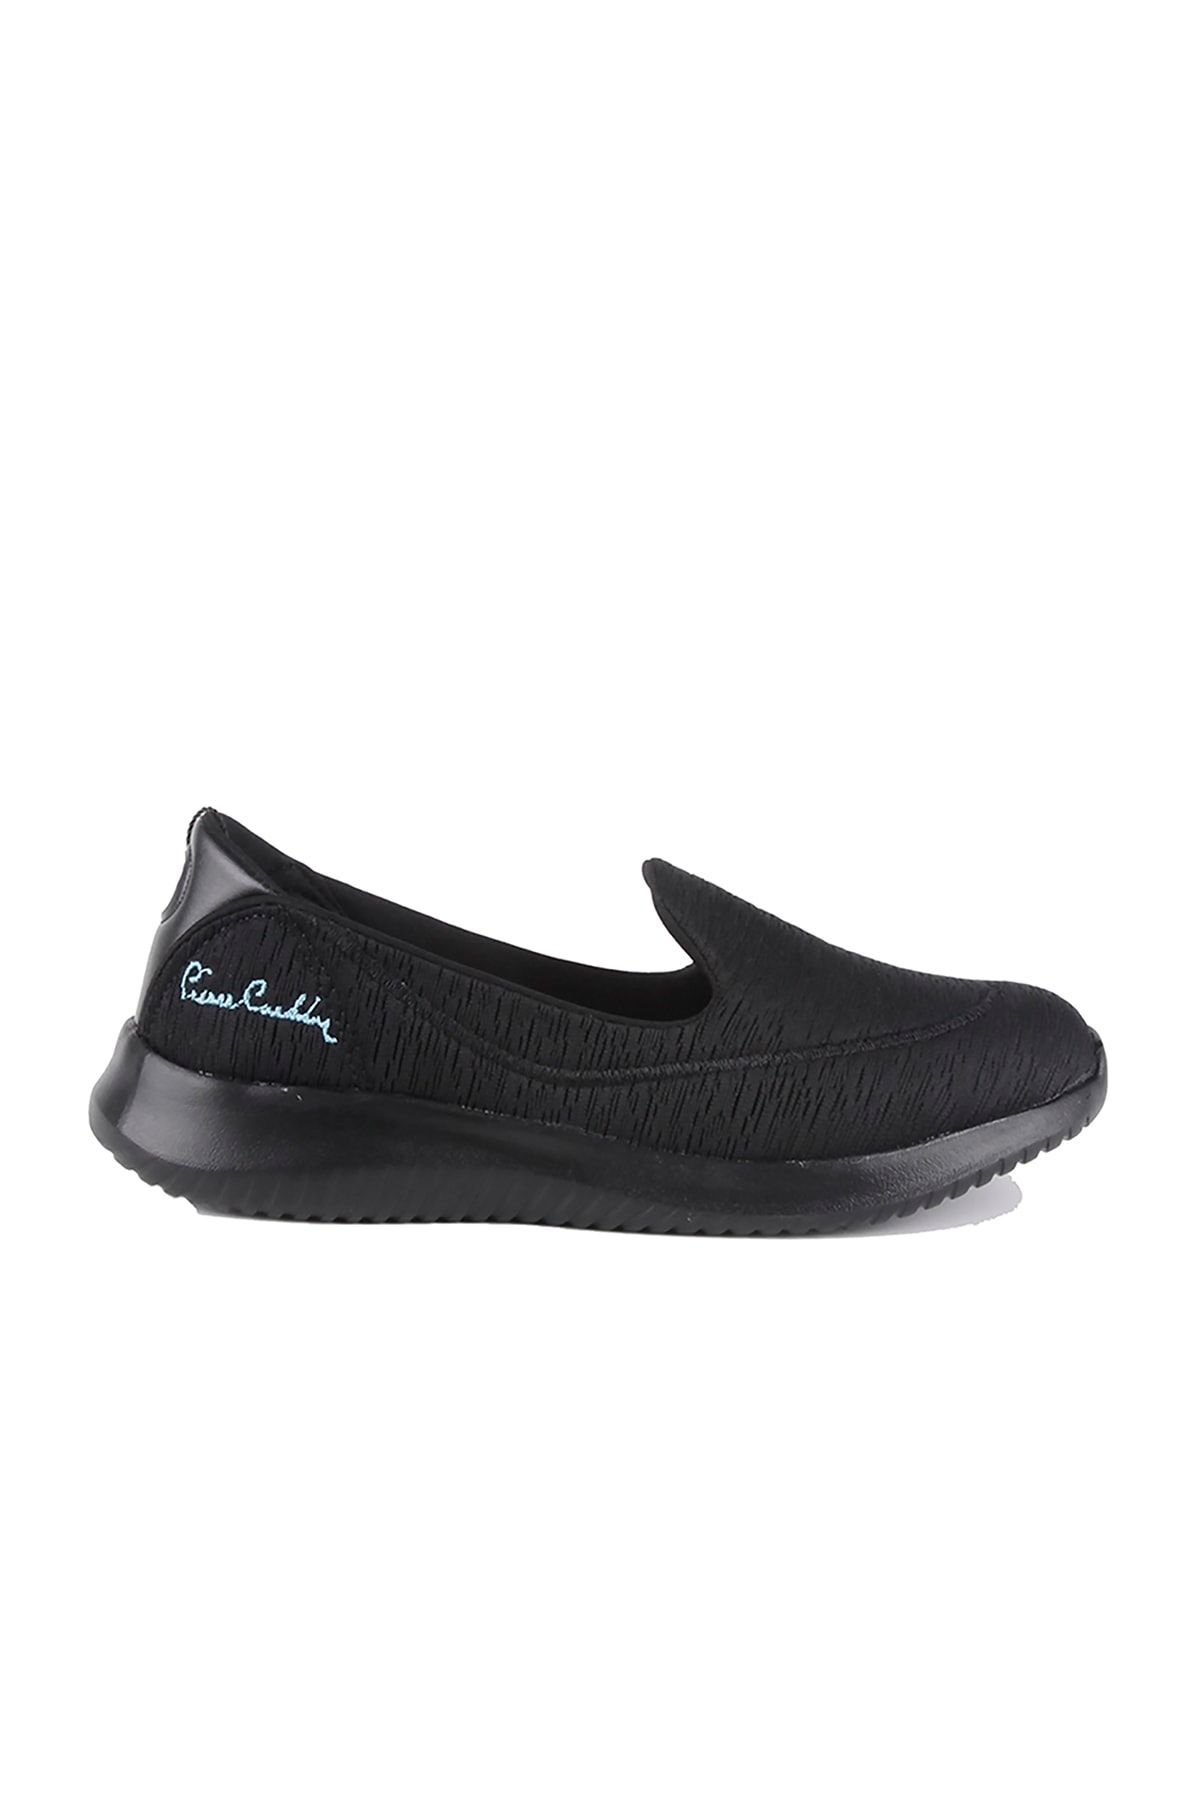 Pierre Cardin Kadın Spor Ayakkabı PC-30168 Siyah/Black 20S04PC30168